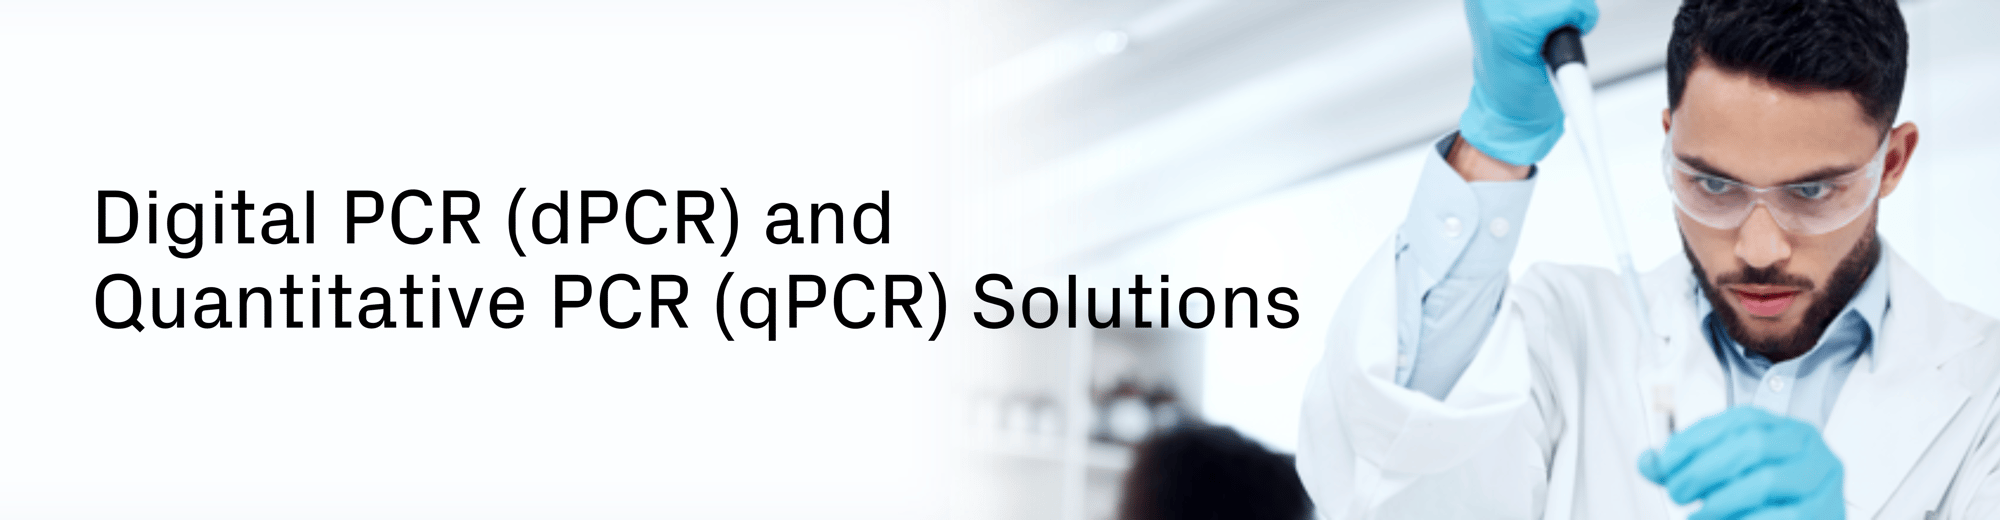 Digital PCR (dPCR) and Quantitative PCR (qPCR) Solutions